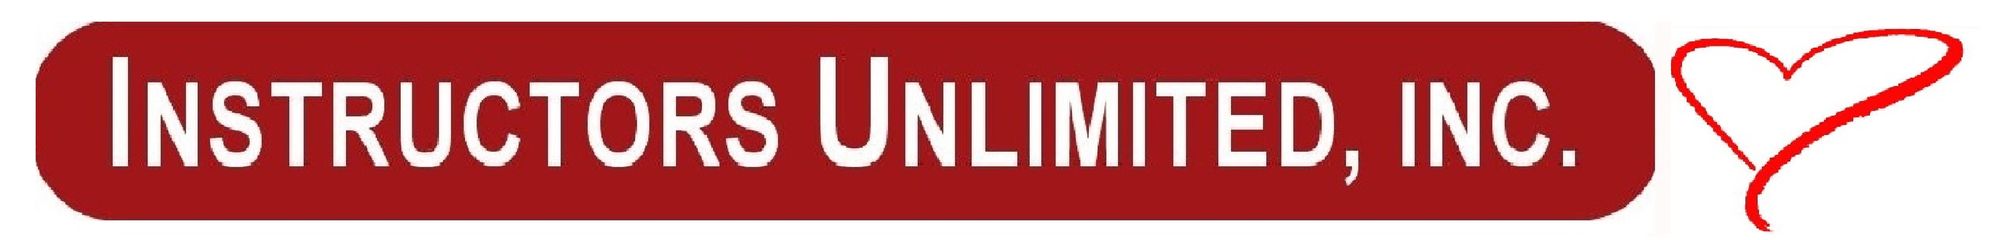 Instructors Unlimited, Inc